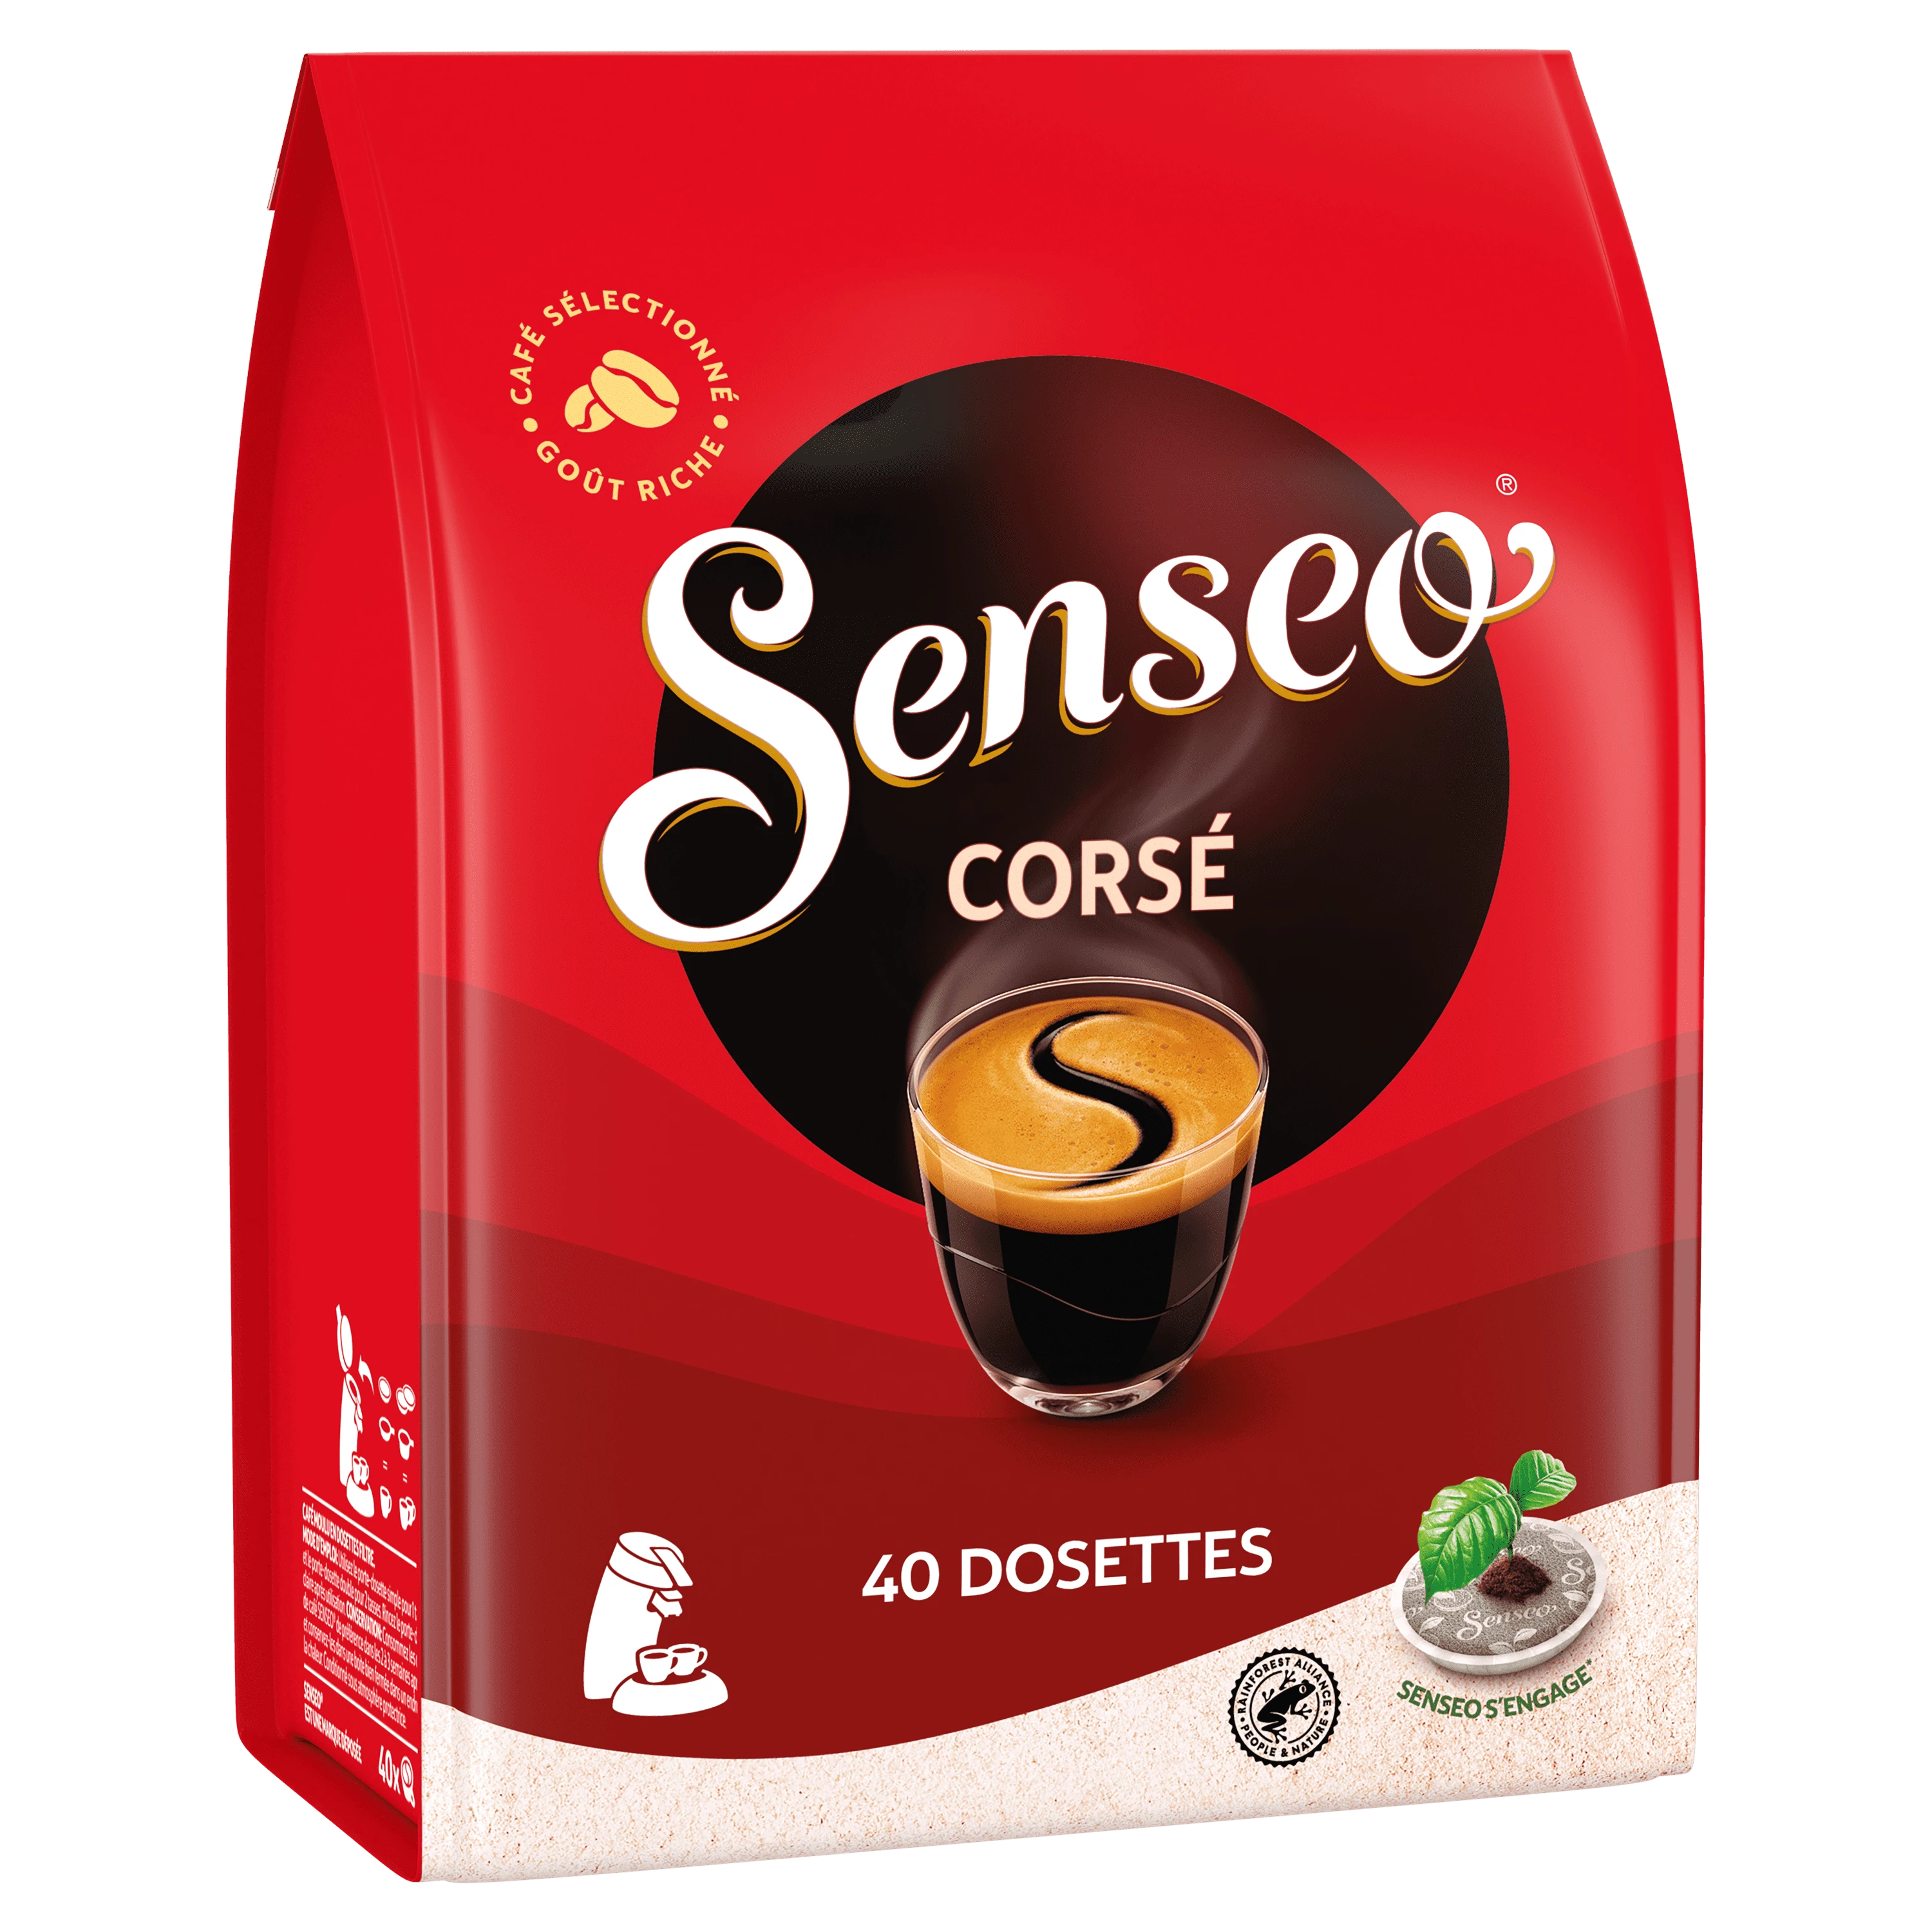 016107-PAQUET DE 18 DOSETTES SENSEO CAFE CORSE